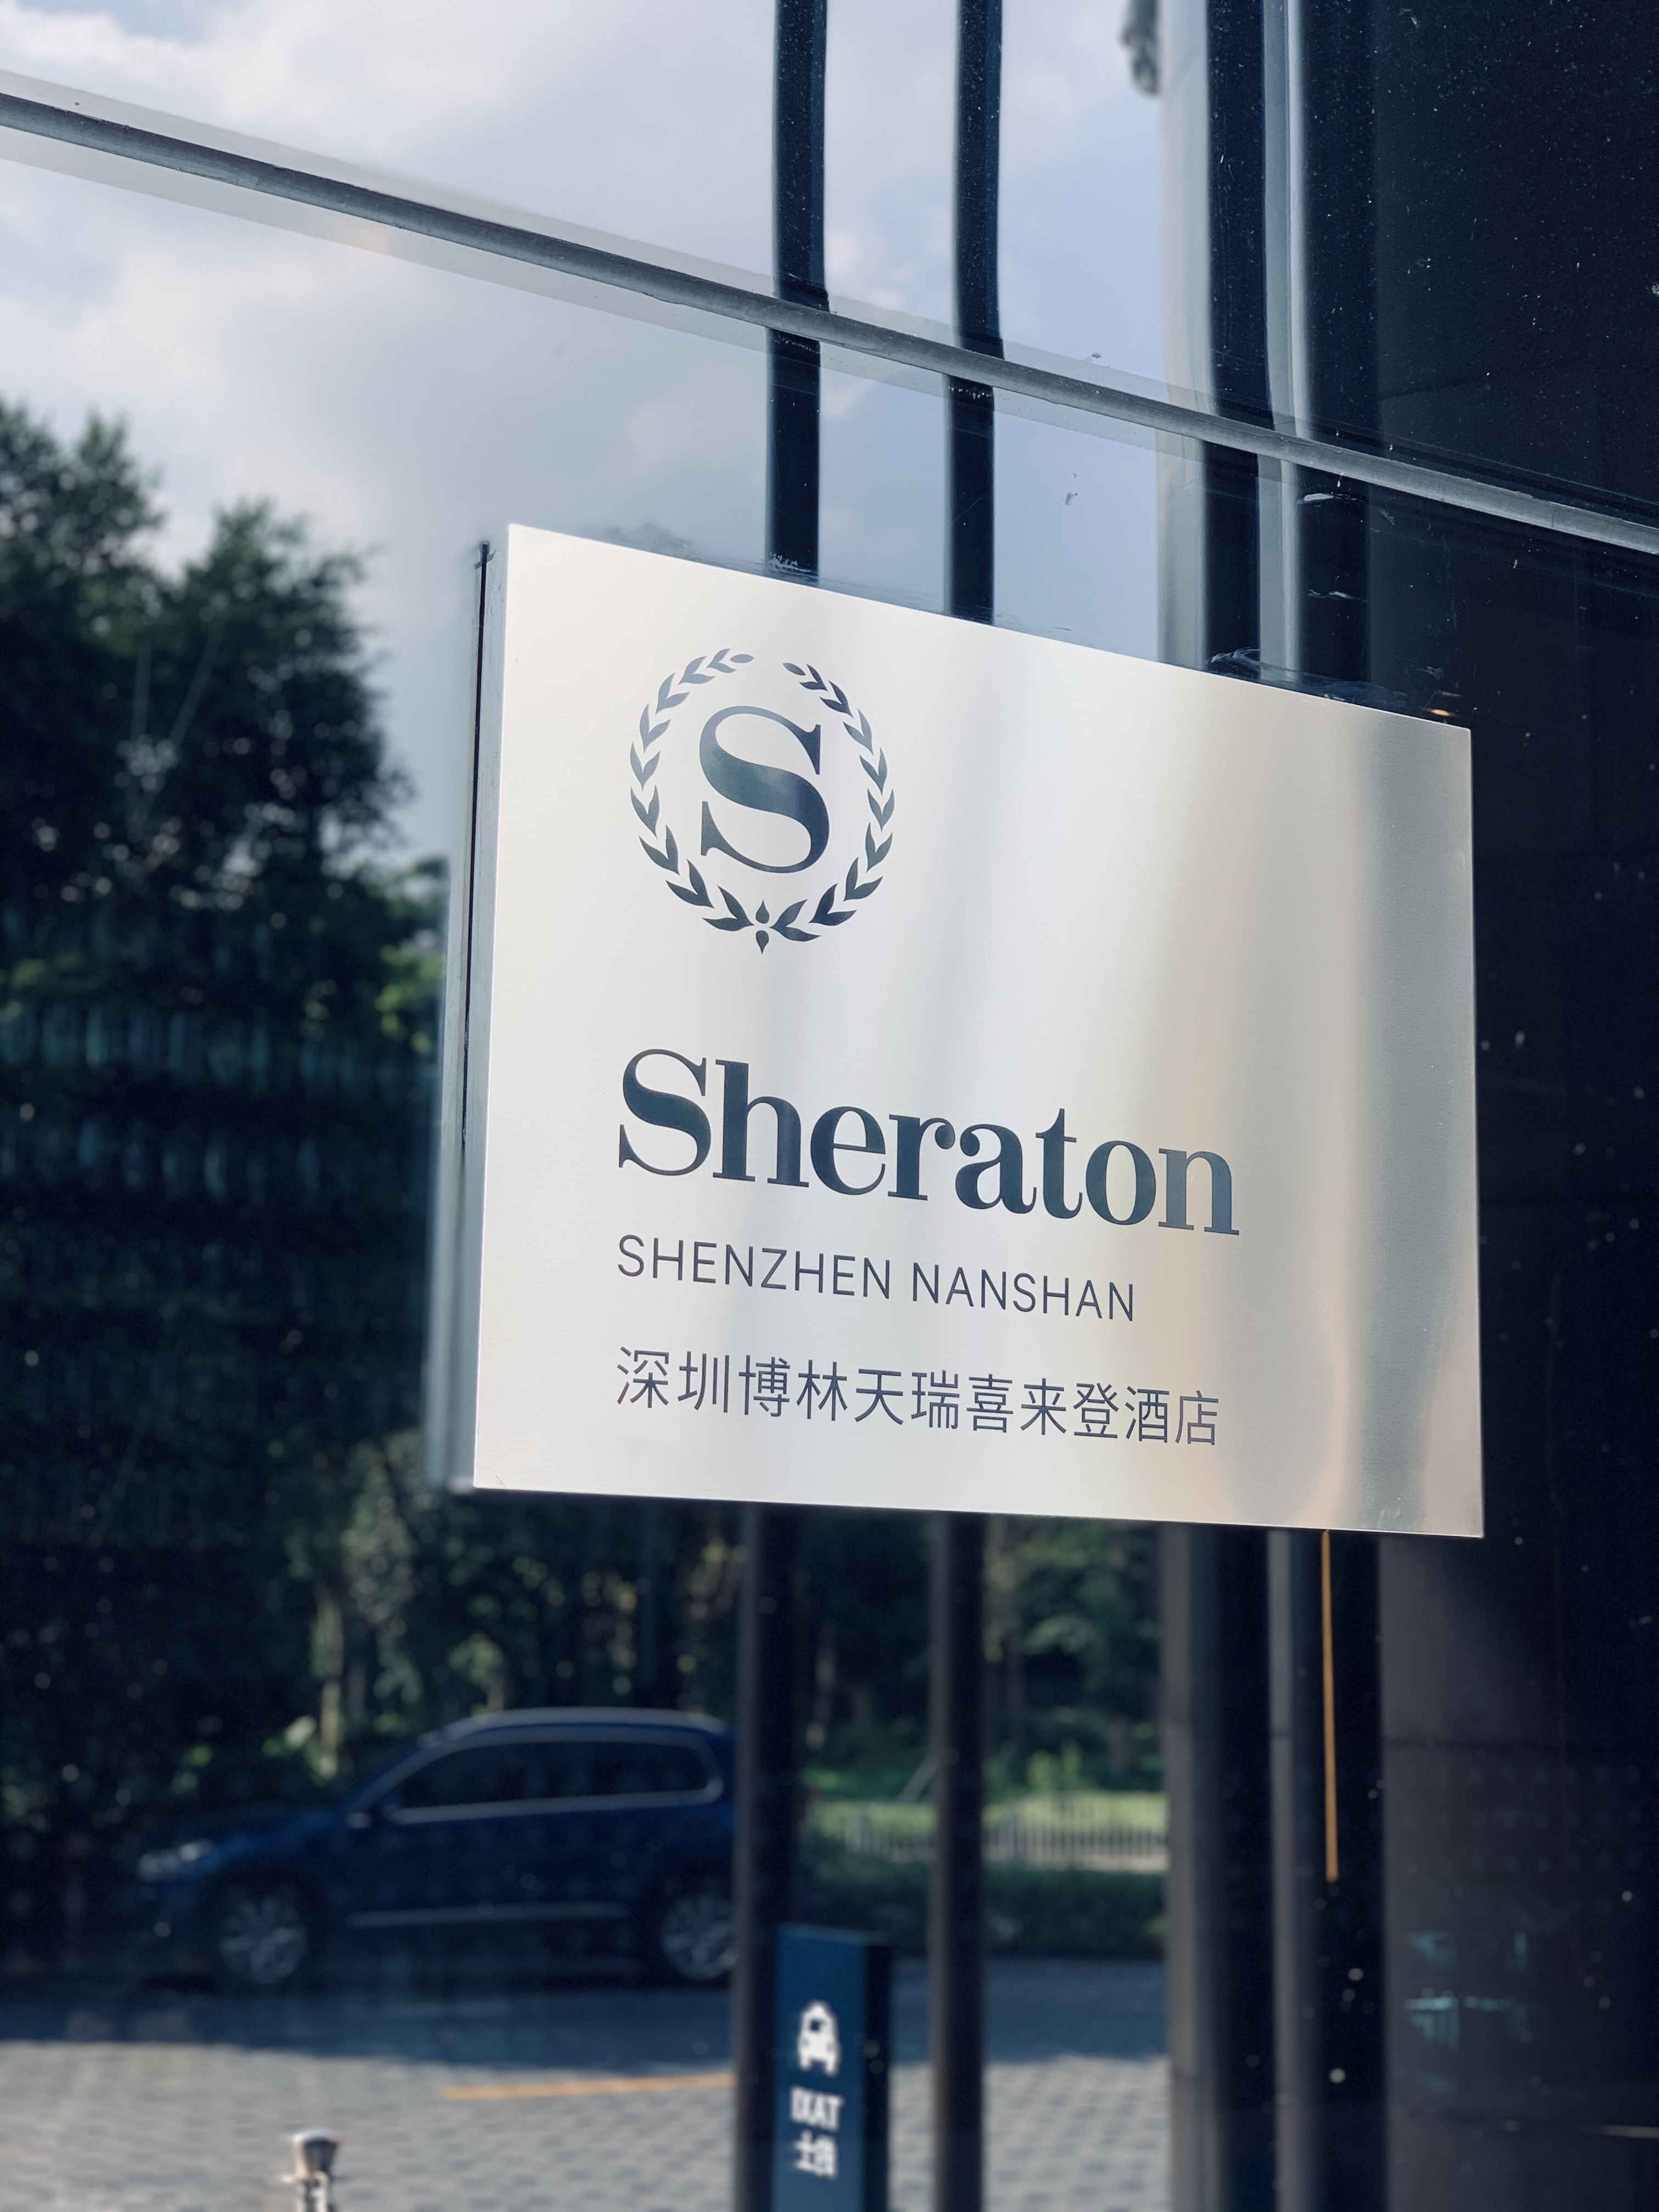 X. - Sheraton Shenzhen Nanshan